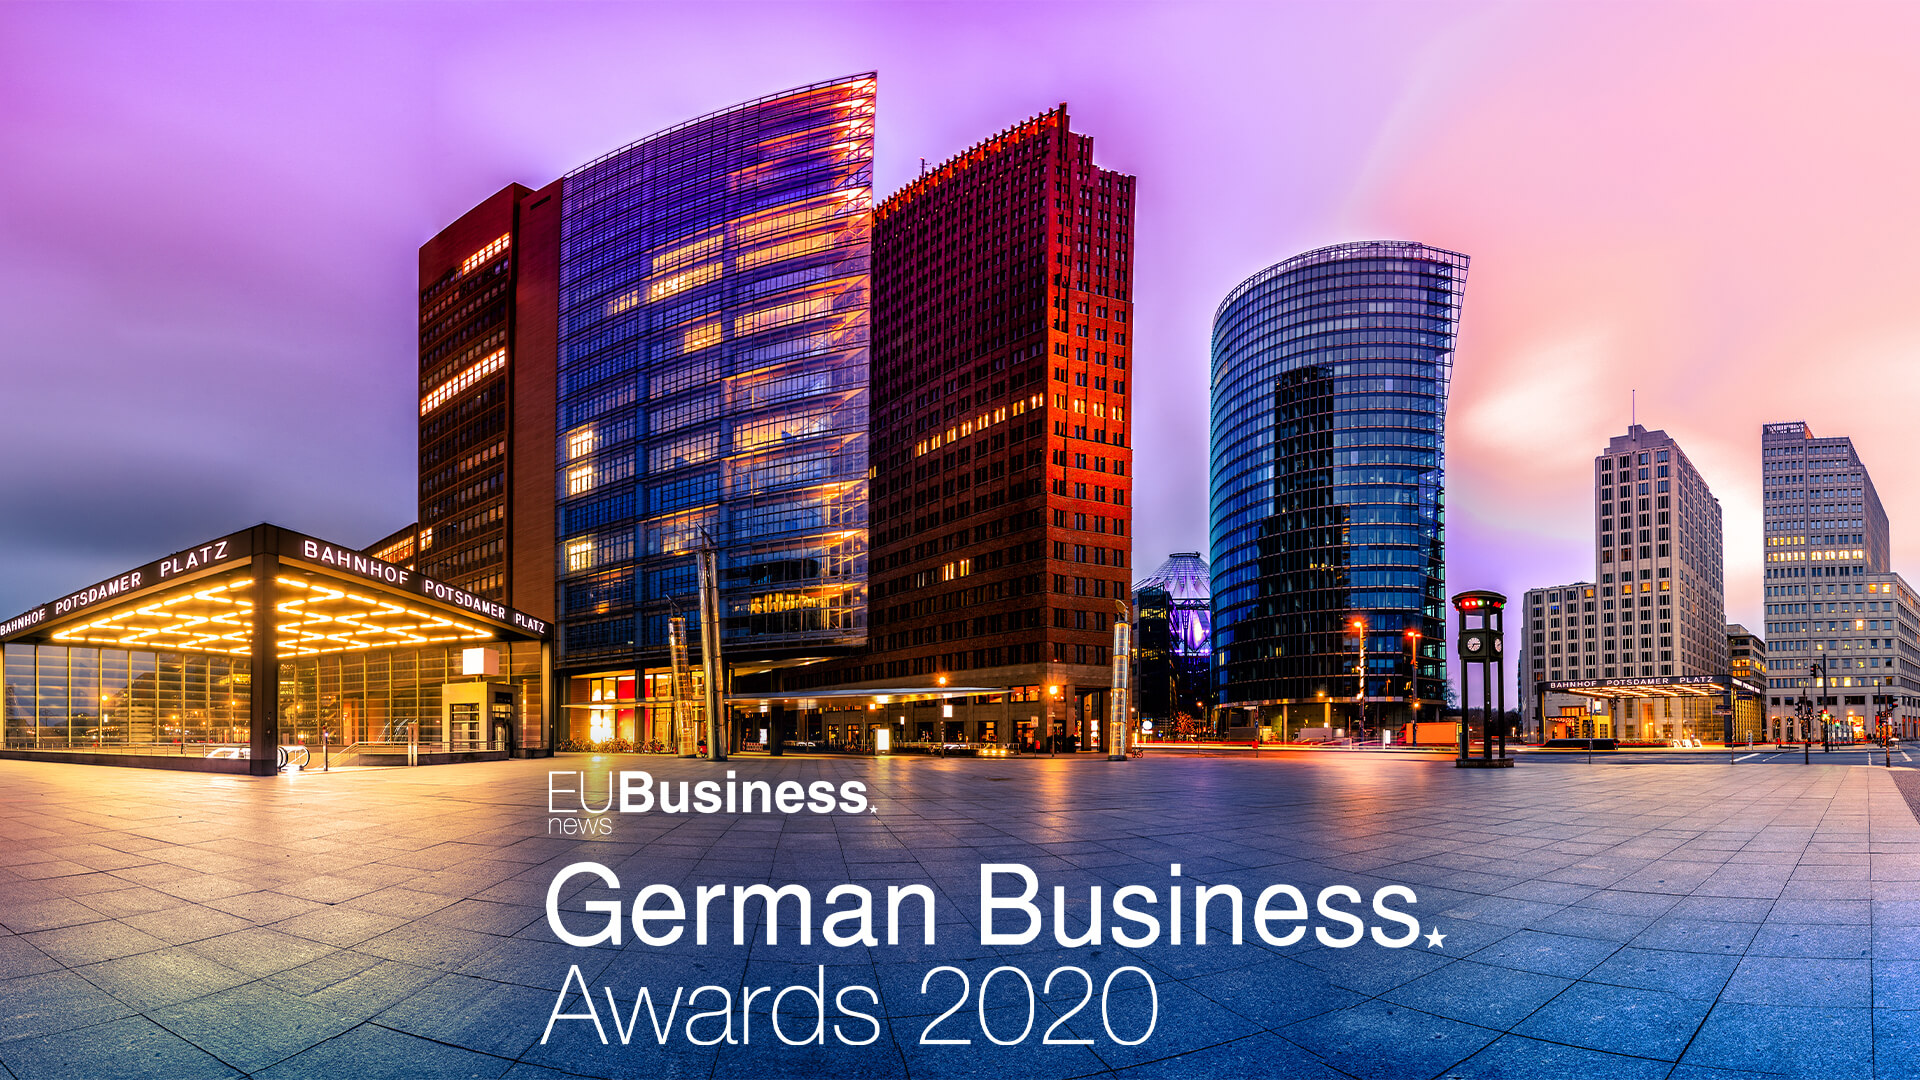 German business awards